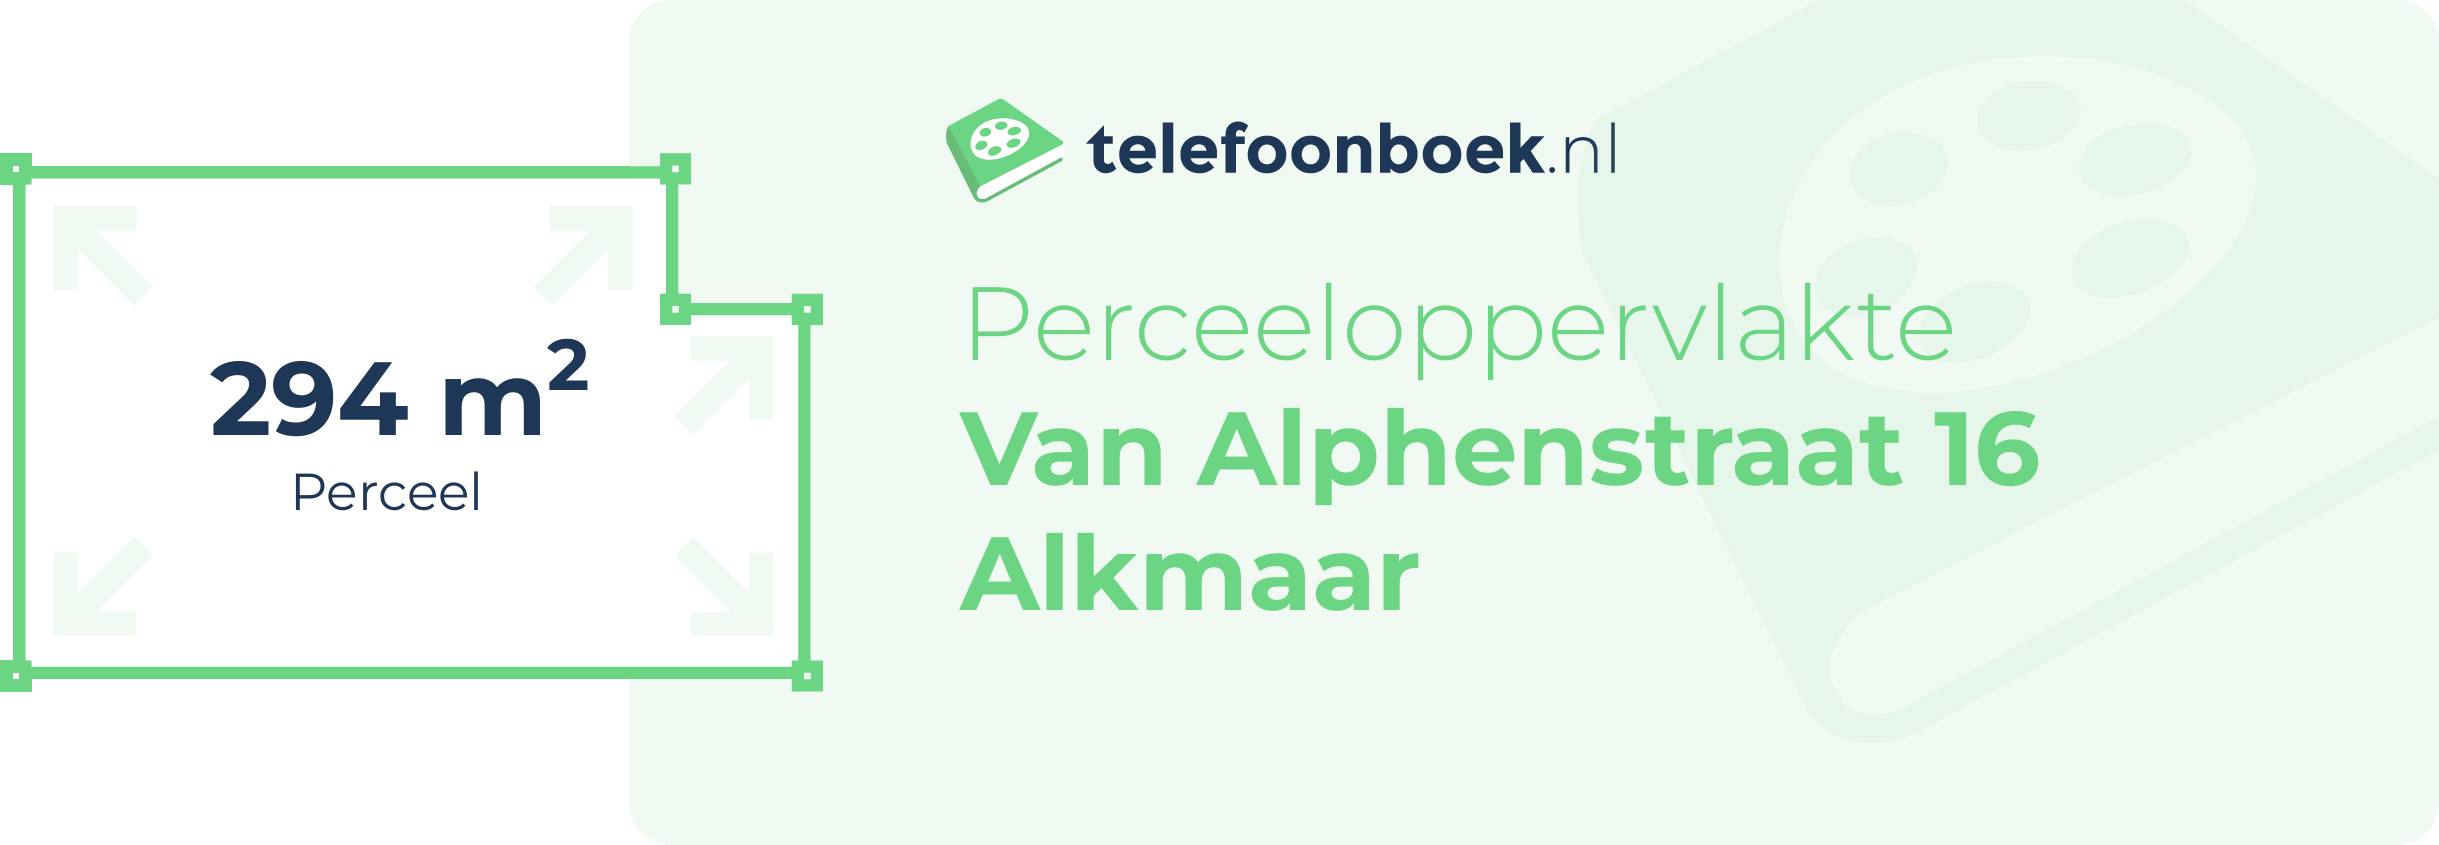 Perceeloppervlakte Van Alphenstraat 16 Alkmaar